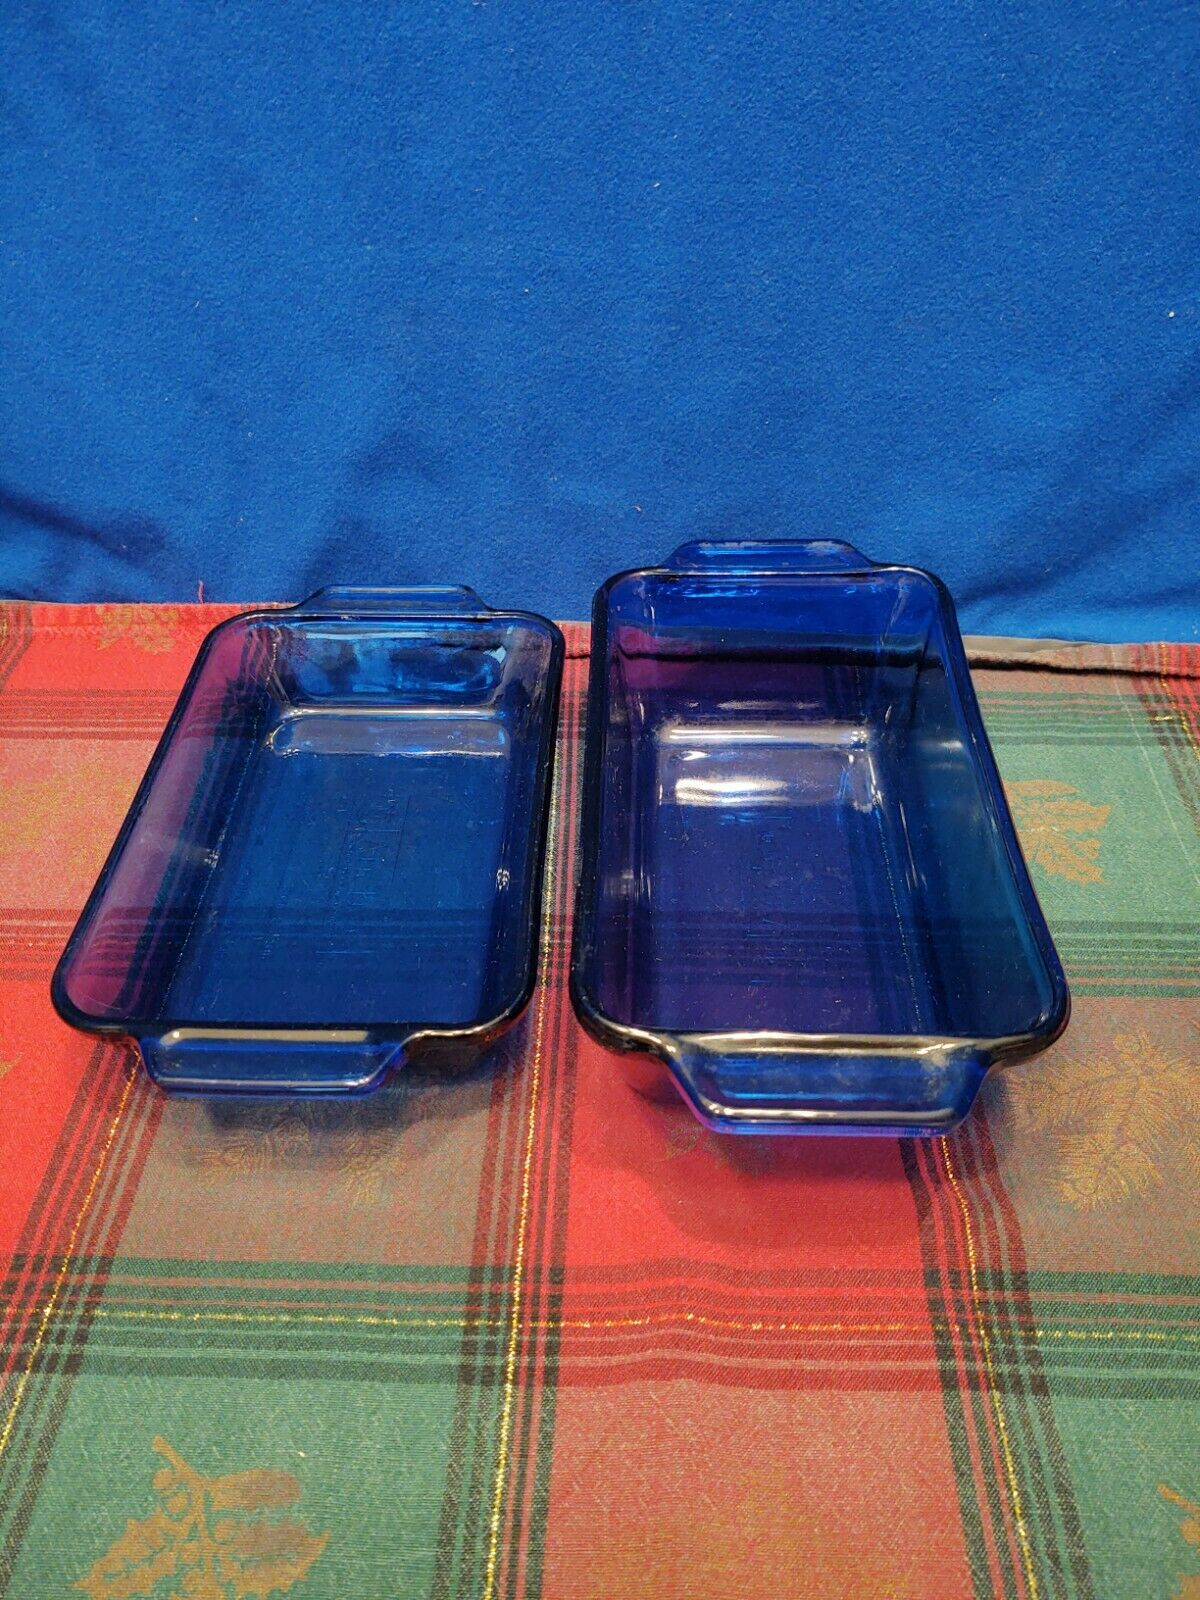 2 Vintage Cobalt Blue Anchor Hocking glass pans